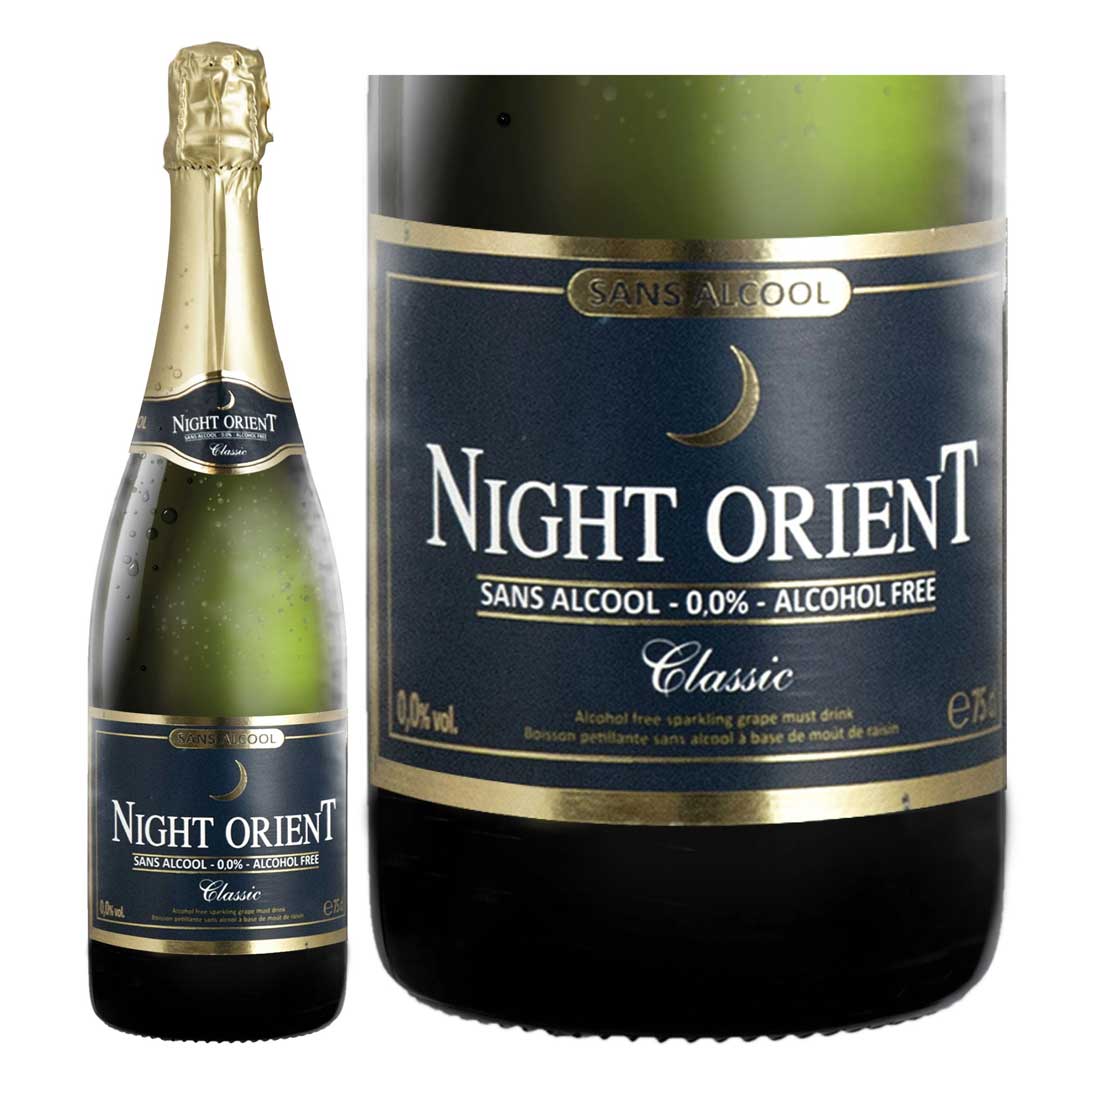 【送料無料】【ノンアルコールワイン】NIGHT ORIENT CLASSIC ナイトオリエント [3本セット] スパークリング ワイン ドイツ産 やや甘口 750ml お祝い 記念日 贈り物 ギフト プレゼント 箱買い ケース買い 大人買い